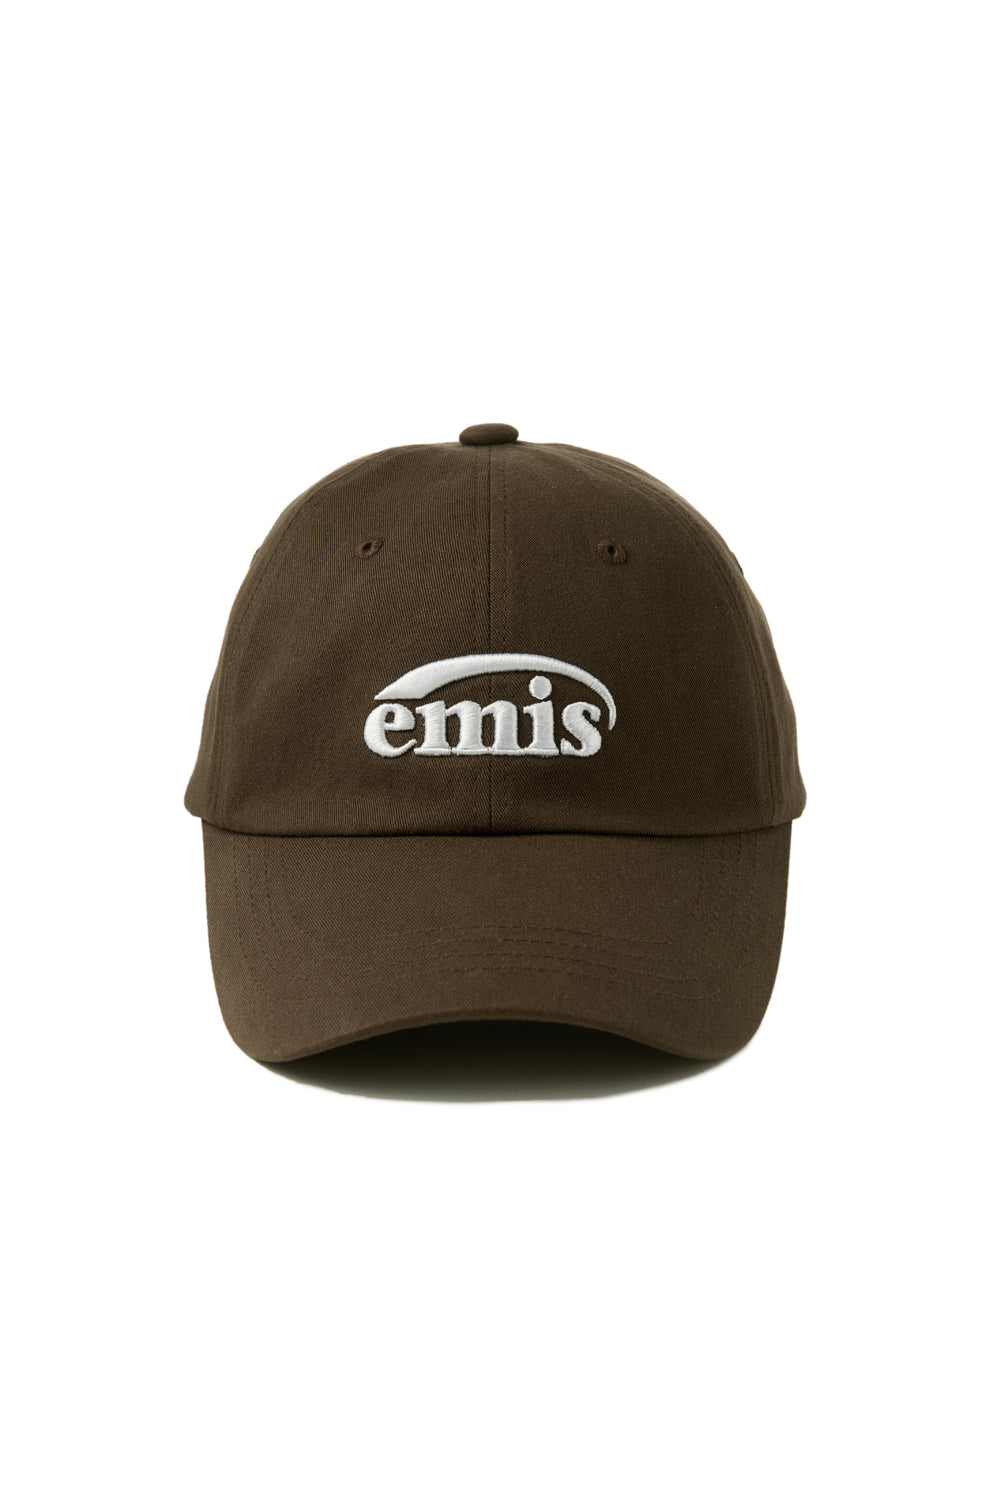 New Logo Emis Cap - Brown